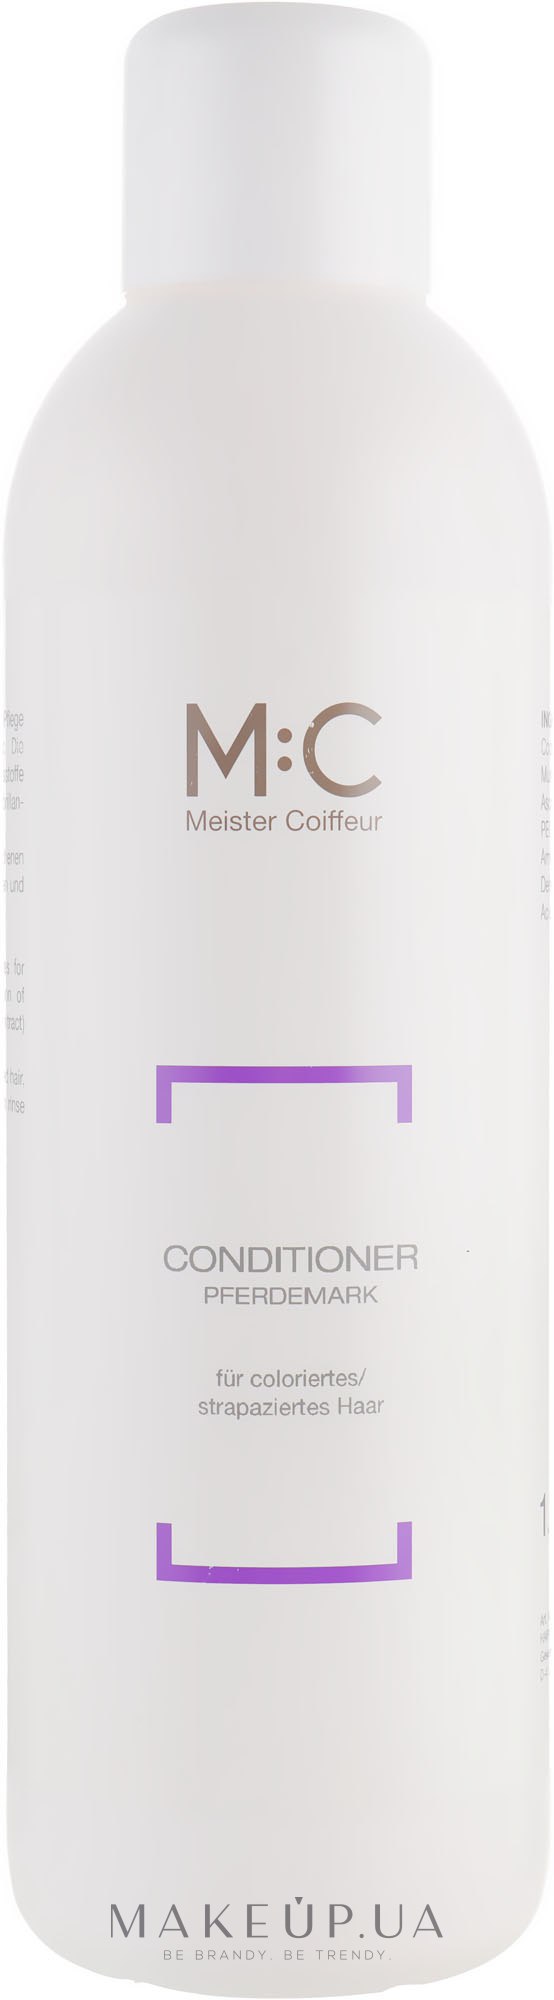 Кондиционер-ополаскиватель для восстановления волос - M:C Meister Coiffeur Conditioner Pferdemark — фото 1000ml